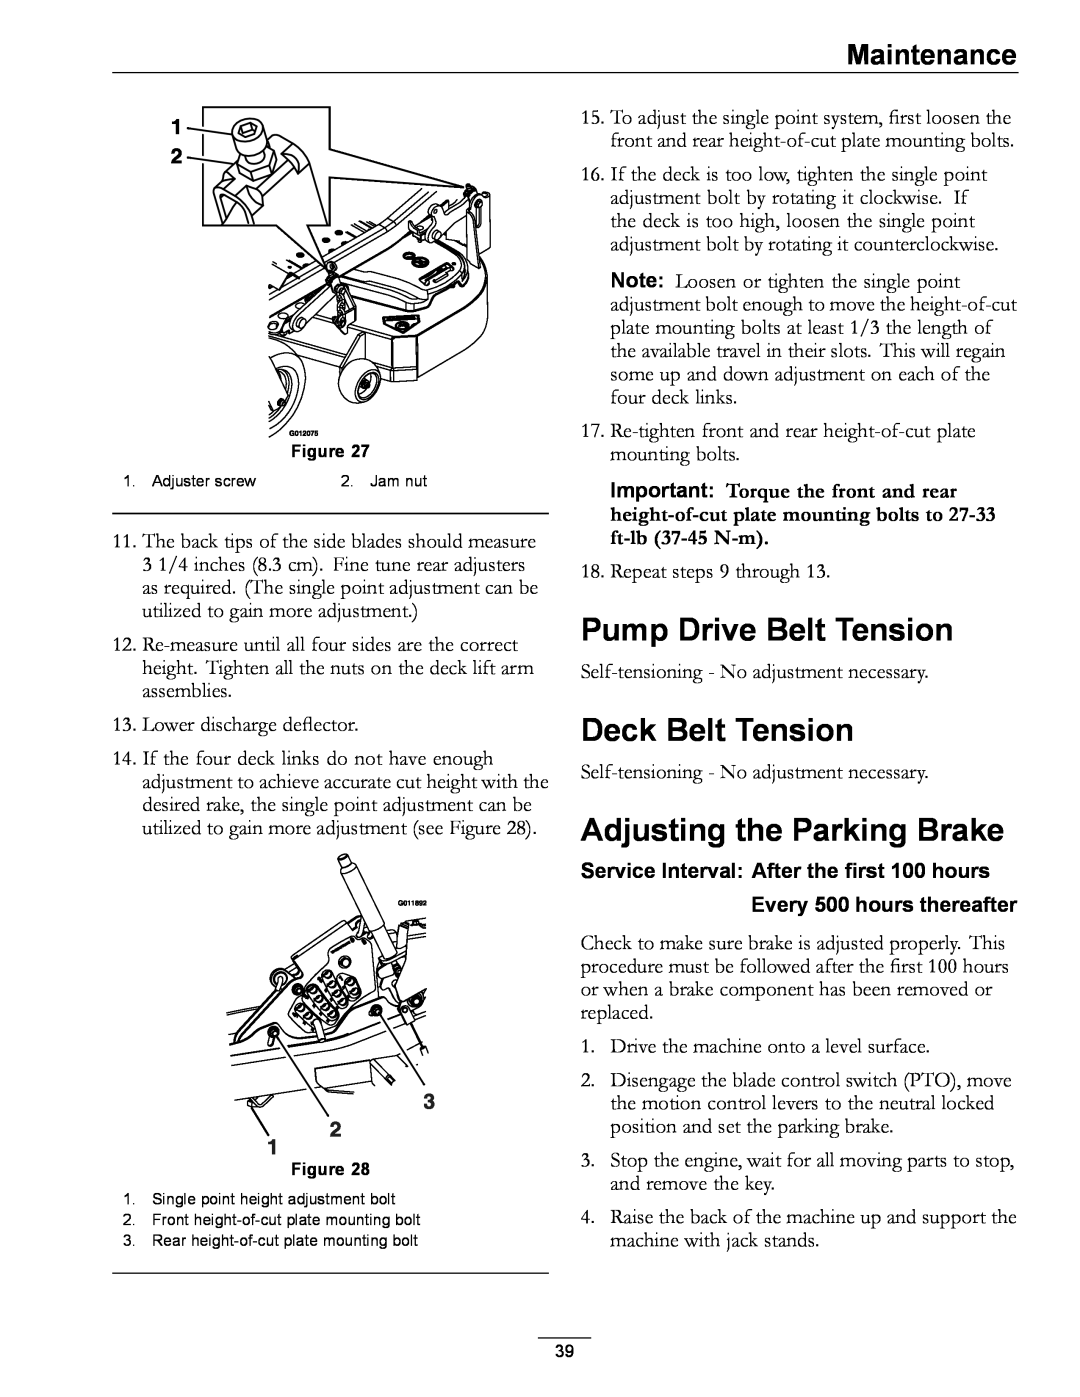 Exmark 4500-872 manual Pump Drive Belt Tension, Deck Belt Tension, Adjusting the Parking Brake, Maintenance 